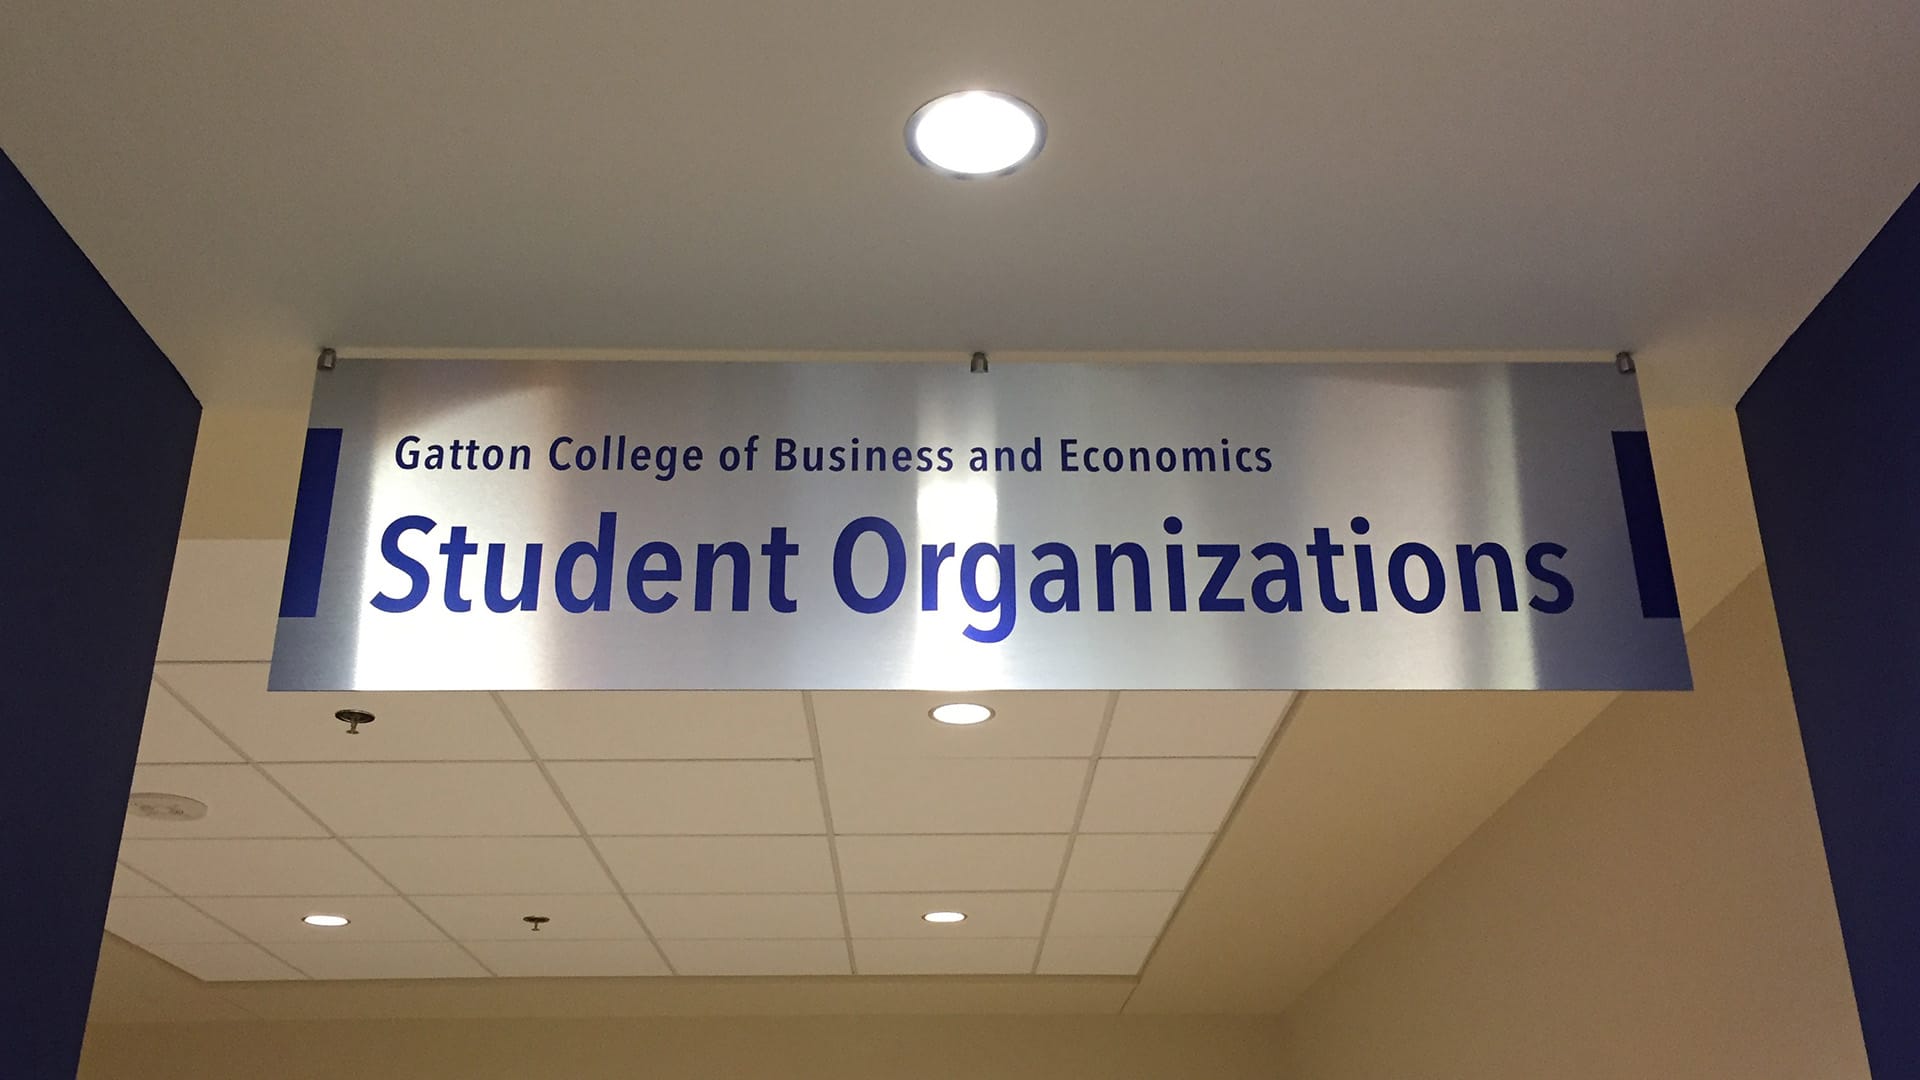 Gatton college student organization banner